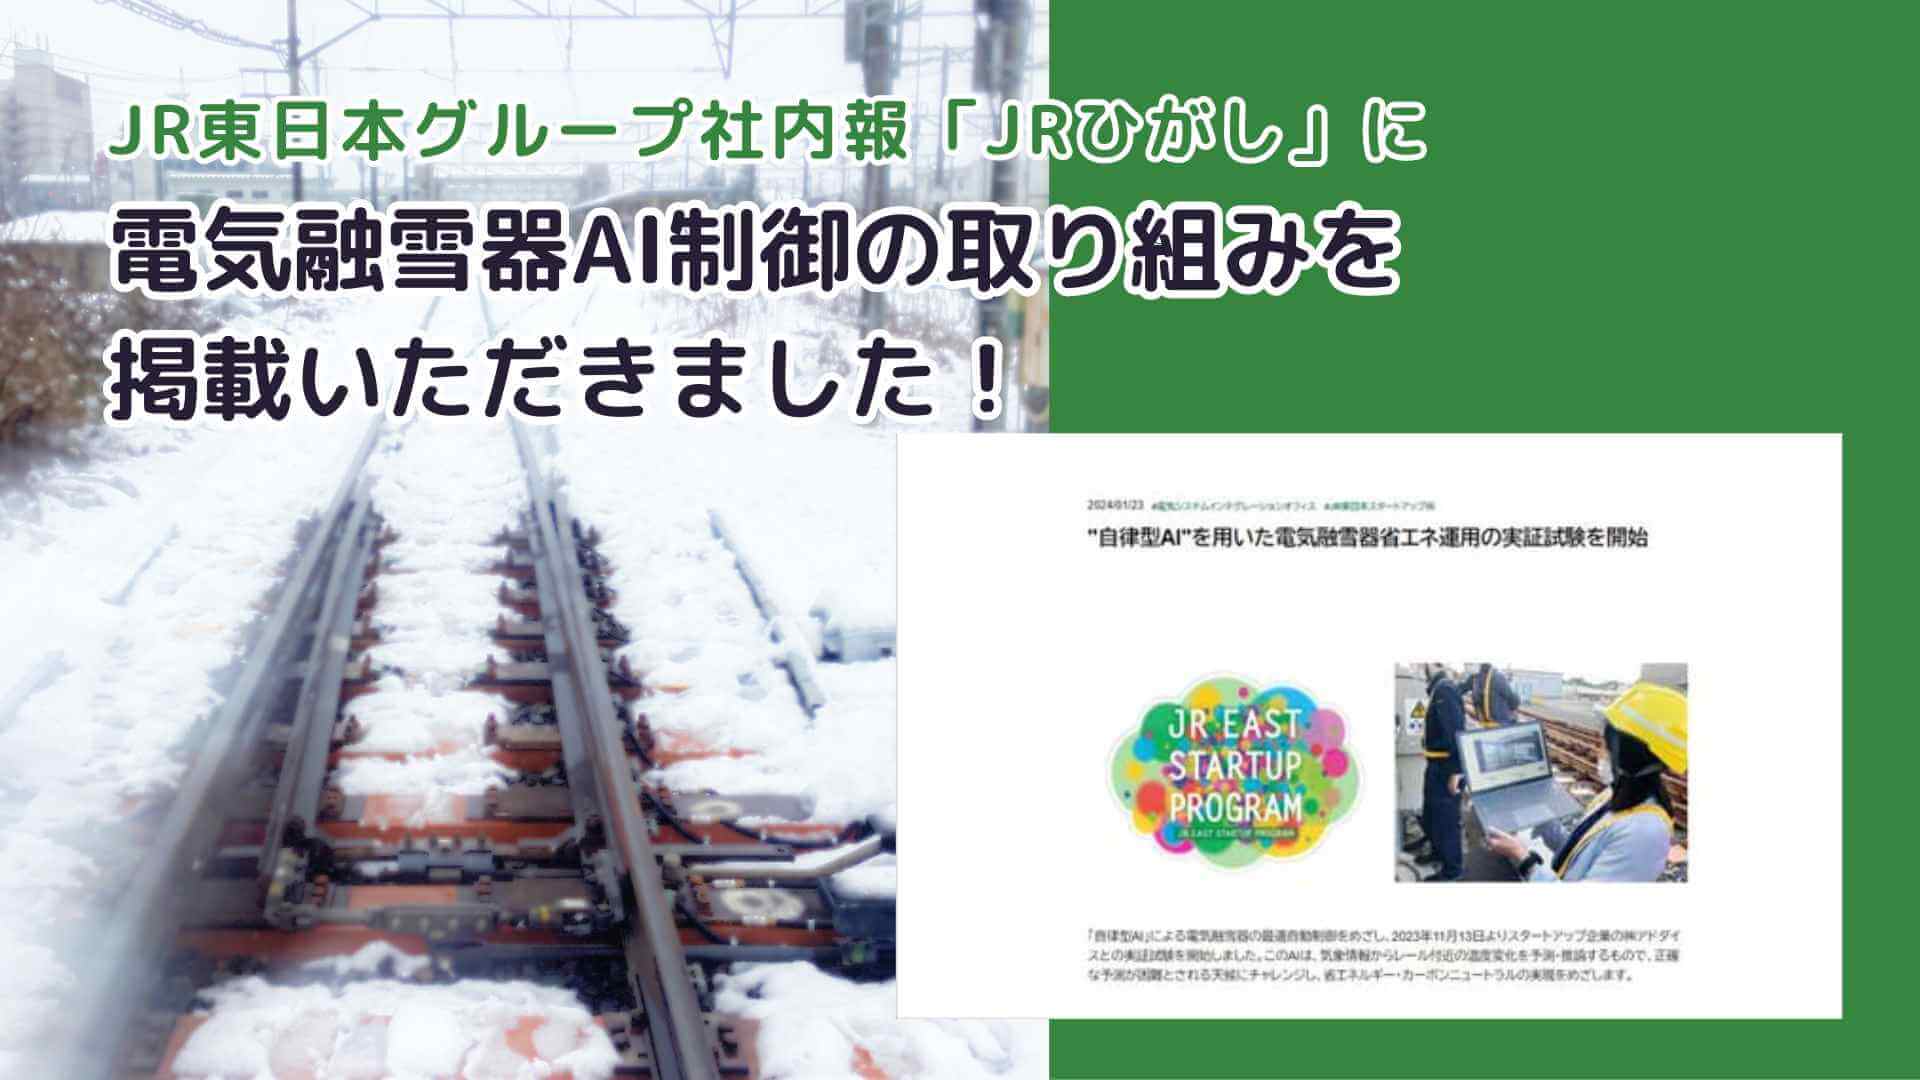 JR東日本グループ広報誌「ひがし」-1月号にアドダイス電気融雪器AI制御の取り組みについて掲載